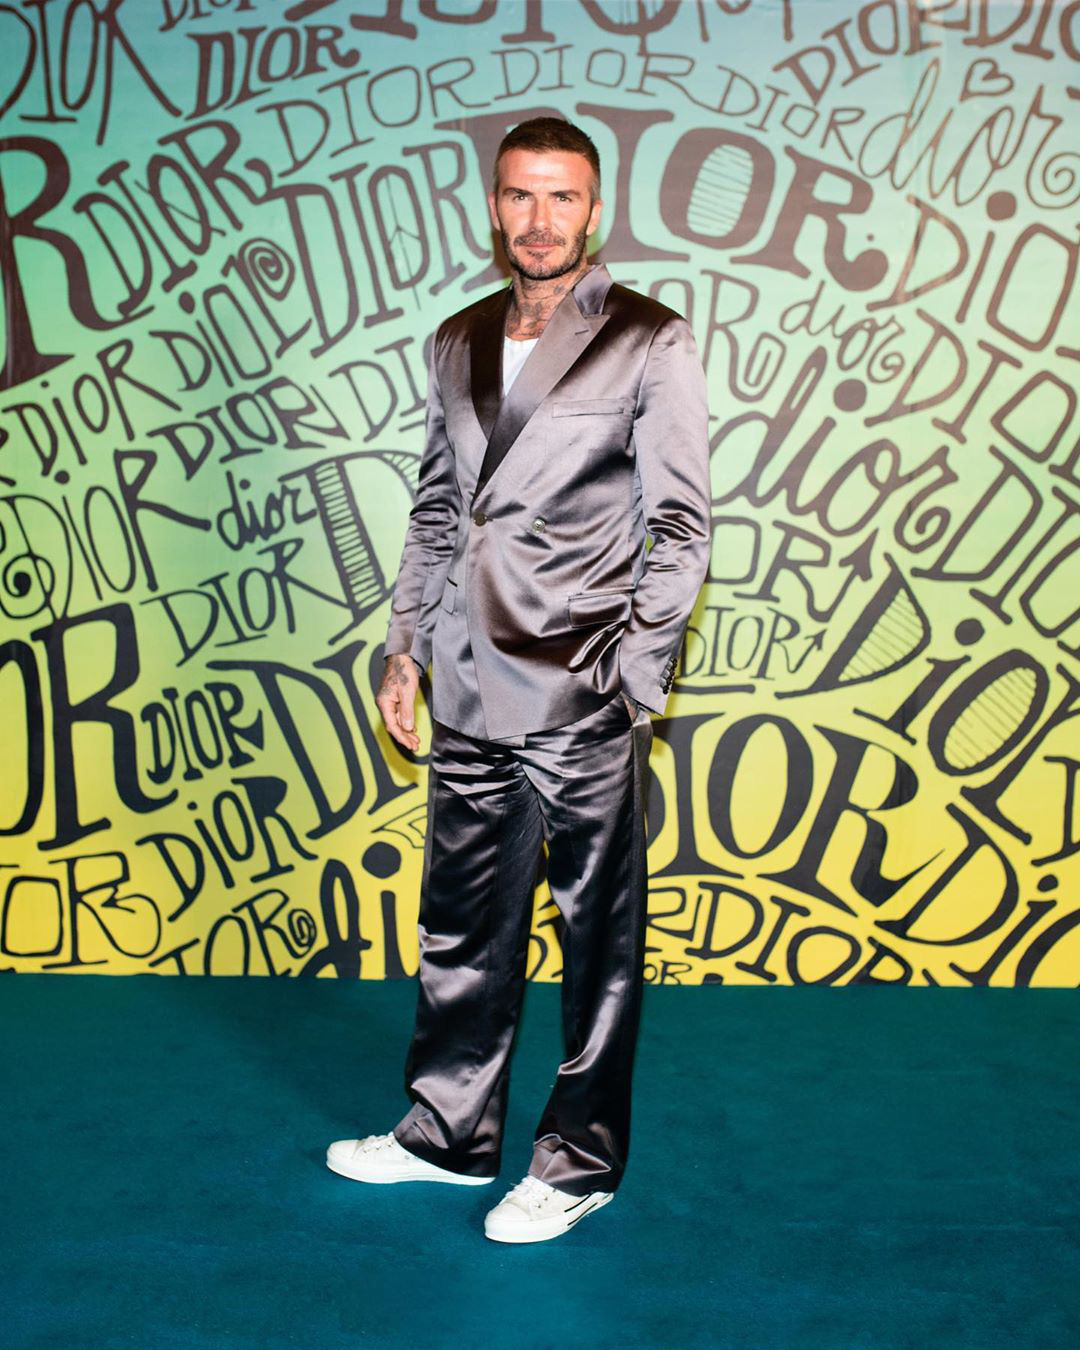 Giữa lúc thương hiệu của vợ làm ăn khó khăn, David Beckham chiếm trọn spotlight với bộ suit bóng bẩy chất chơi như trai tân - Ảnh 1.